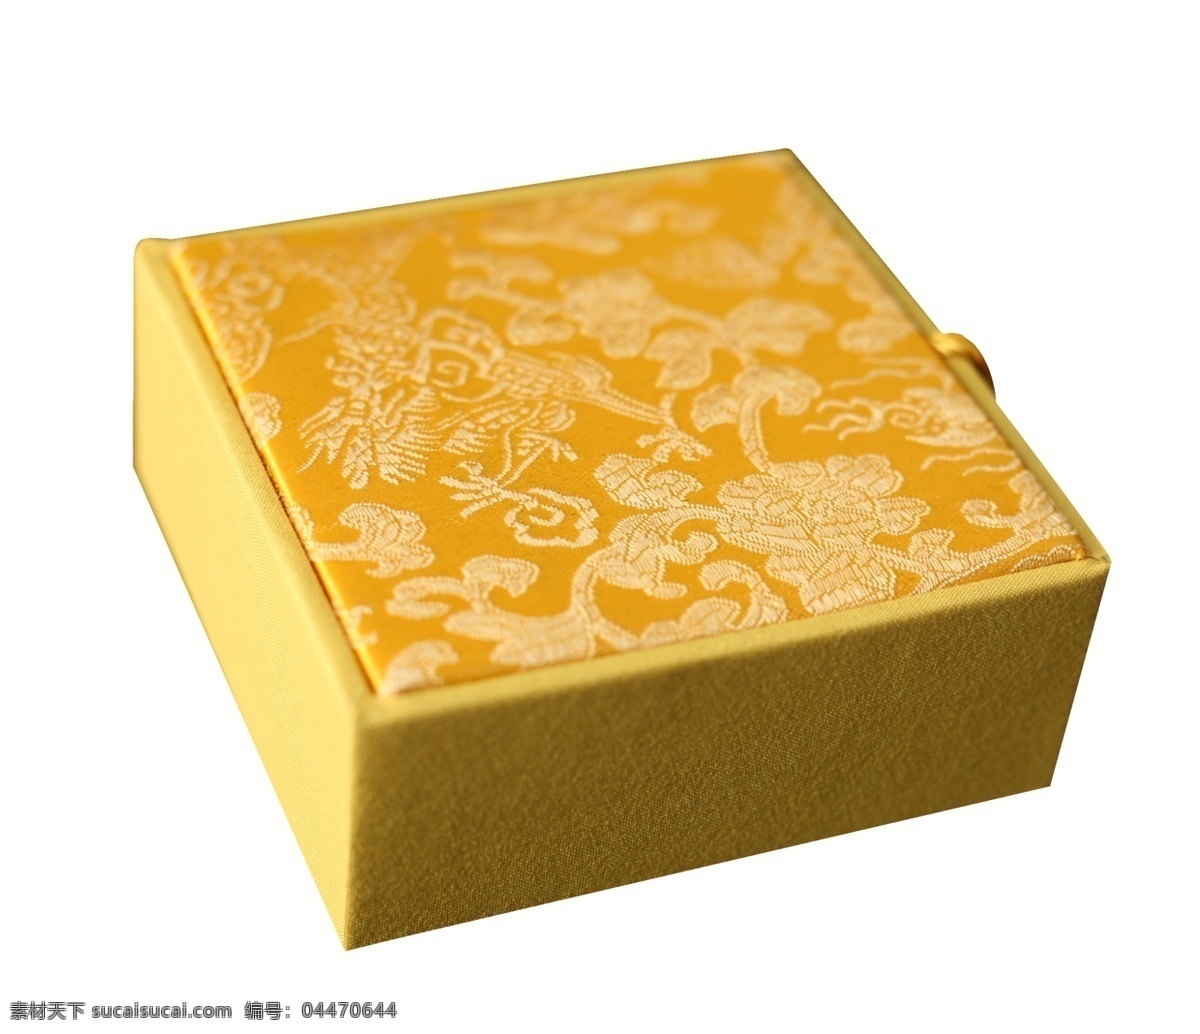 黄色 中国 风 花纹 纹理 盒子 传统 中国风 复古 锦盒 四方盒子 复古花纹 中国风画 花纹盒子 包装盒 黄色的盒子